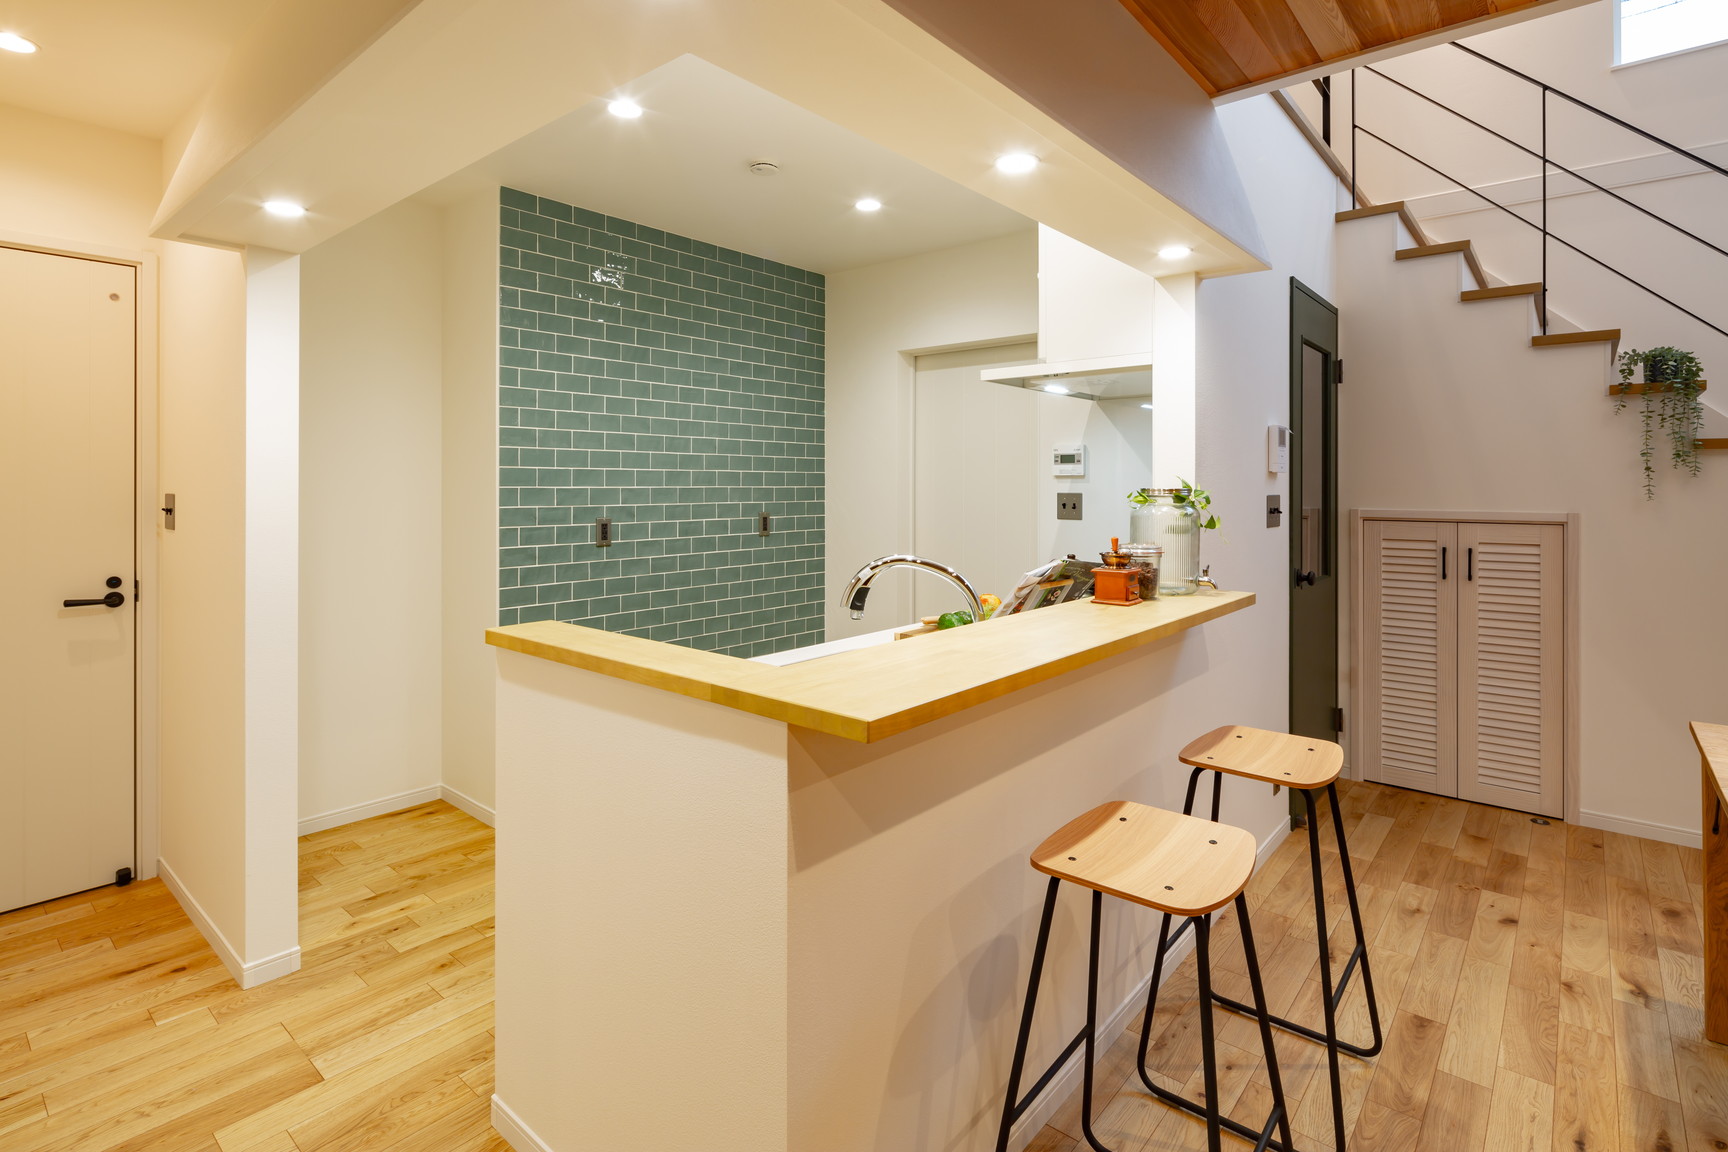 FREAK’S HOUSEのアイデアが詰まった住空間を価格もスマートに叶えるつながるを楽しむ家。 間取り